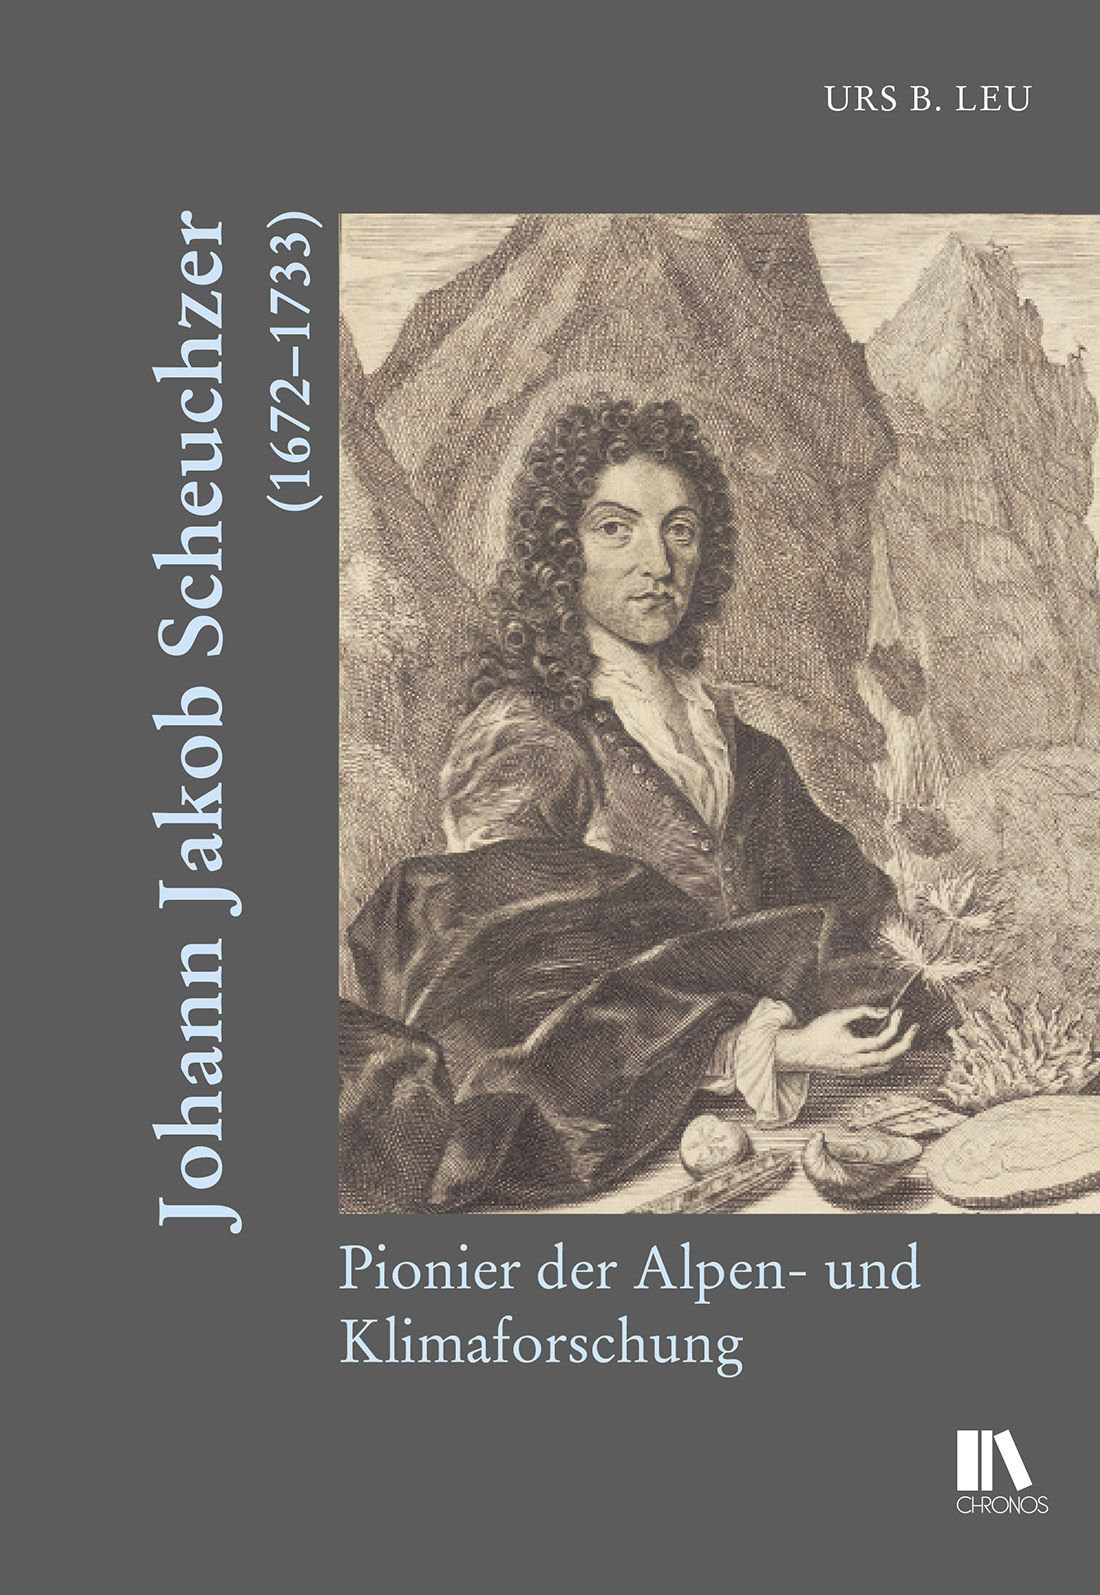 ‘Johann Jakob Scheuchzer (1672-1733) – Pionier der Alpen- und Klimaforschung’ [‘Johann Jakob Scheuchzer (1672-1733) – pioneer of Alpine and climate research’] by Urs B. Leu